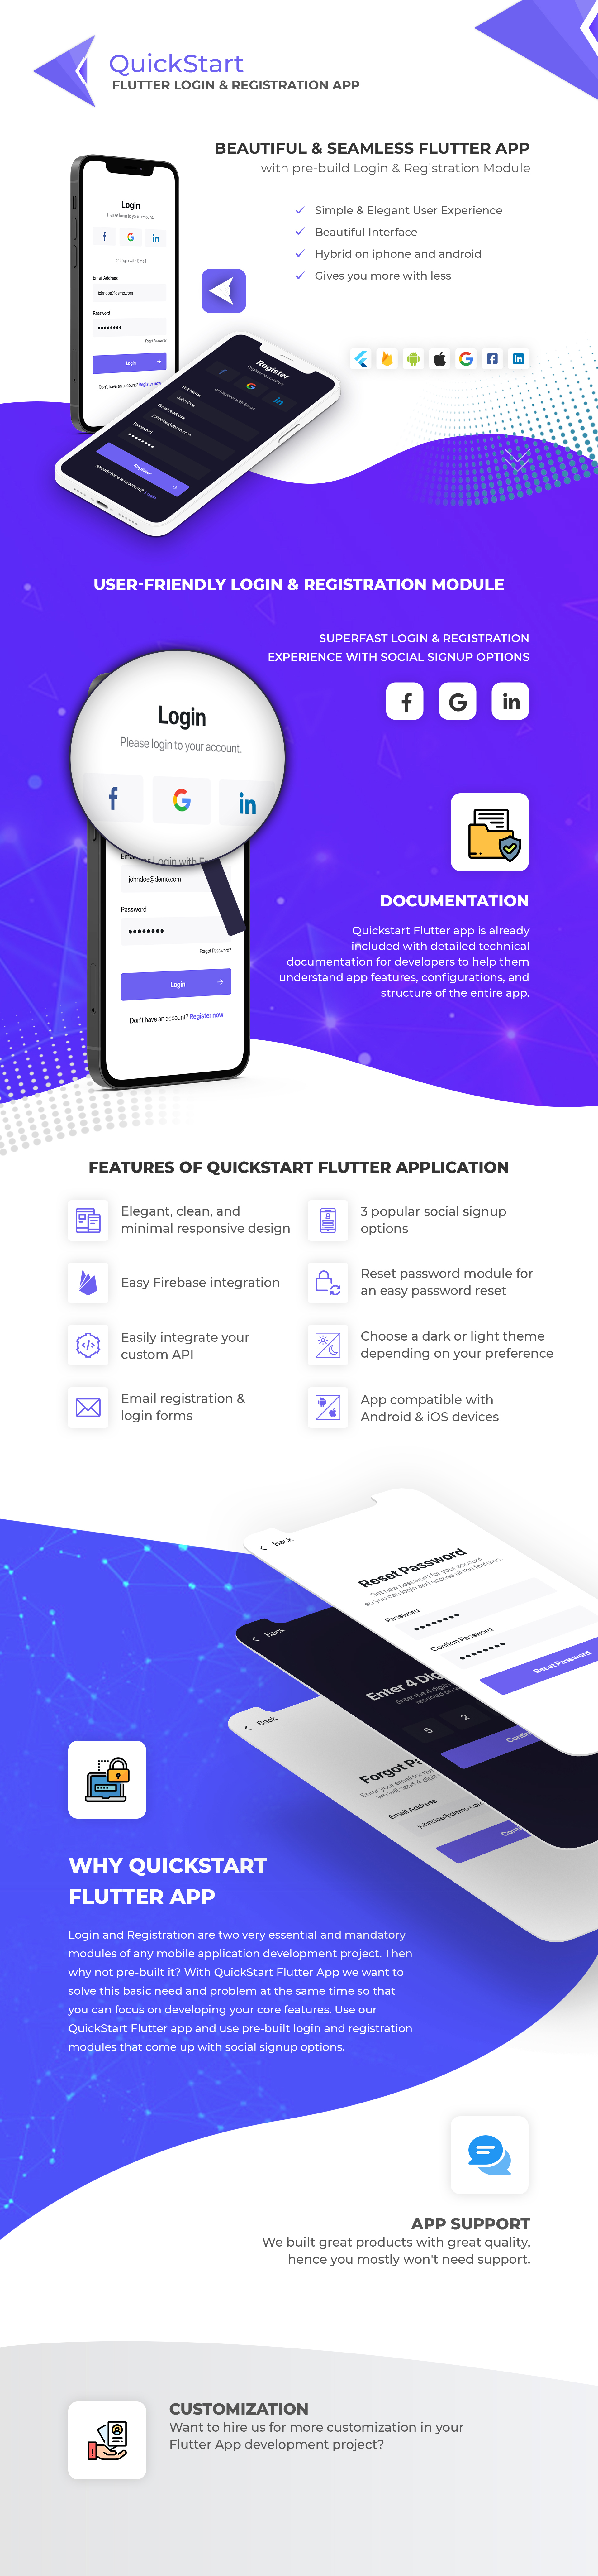 QuickStart Flutter Application